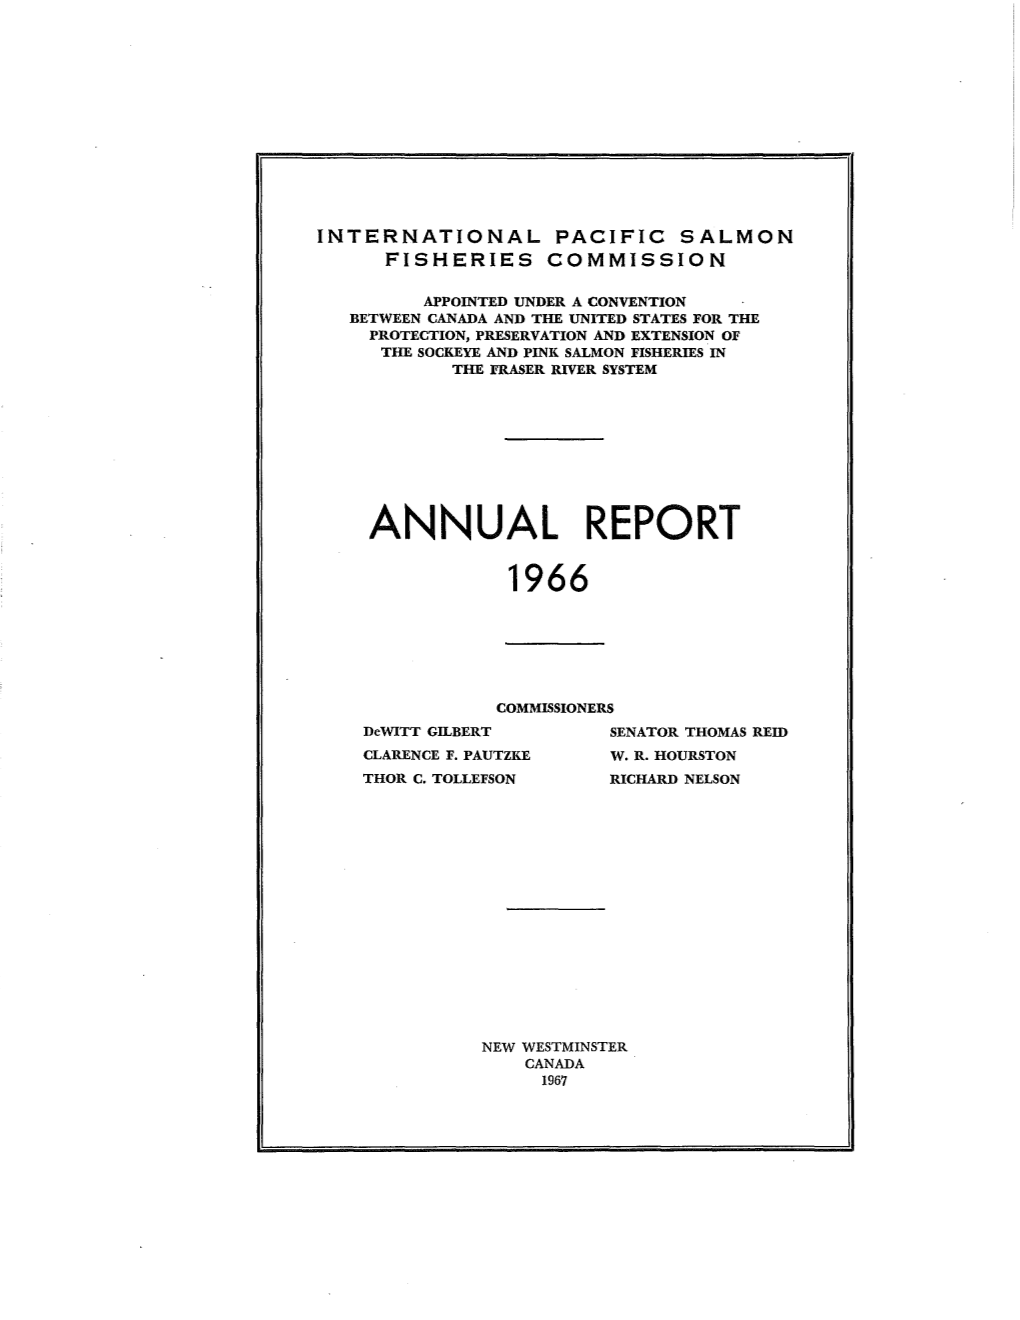 IPSFC Annual Report 1966